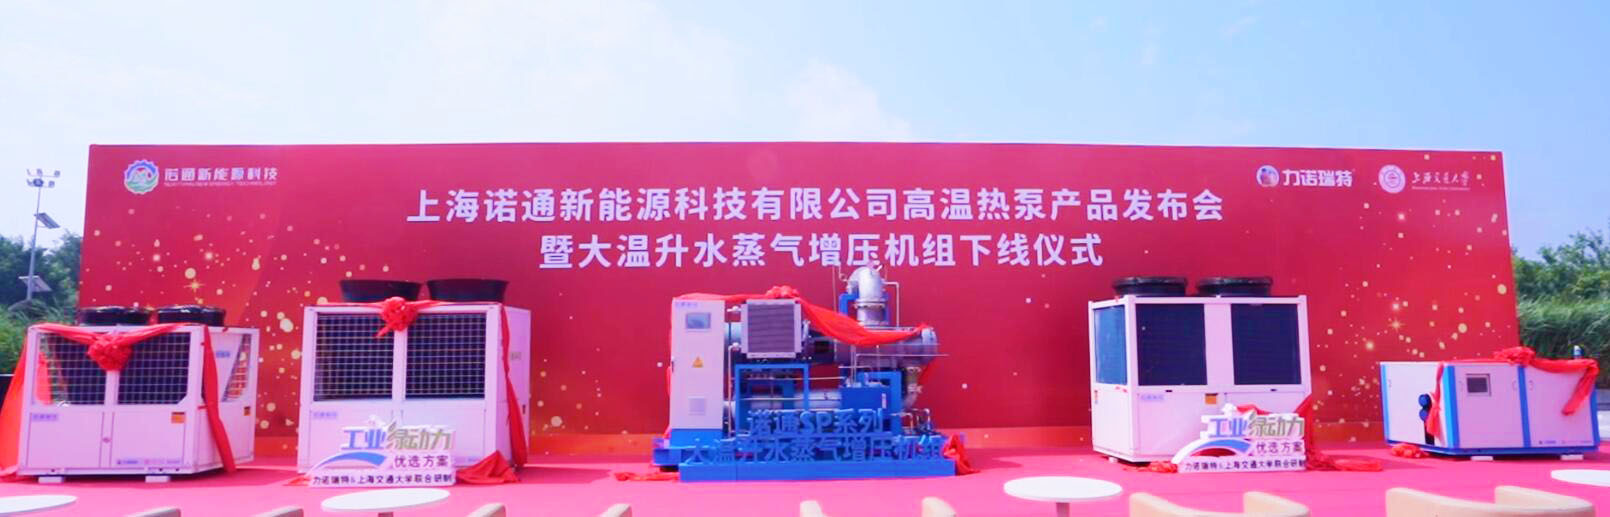 上海諾通新能源科技有限公司發布高溫熱泵及大溫升水蒸氣增壓機組系列產品 引領高溫熱泵應用新時代